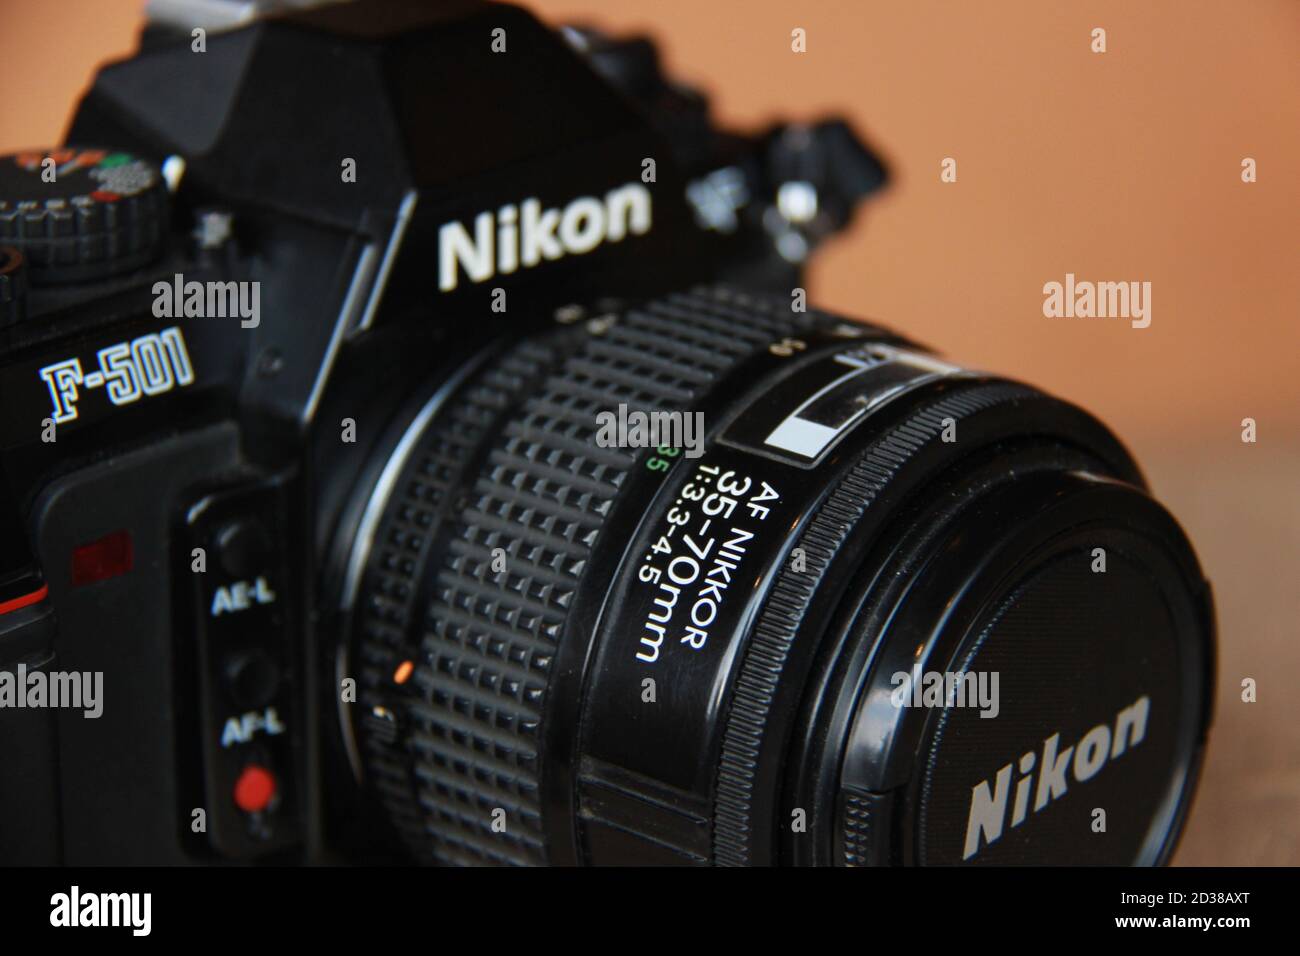 カメラ フィルムカメラ Nikon analog camera hi-res stock photography and images - Alamy